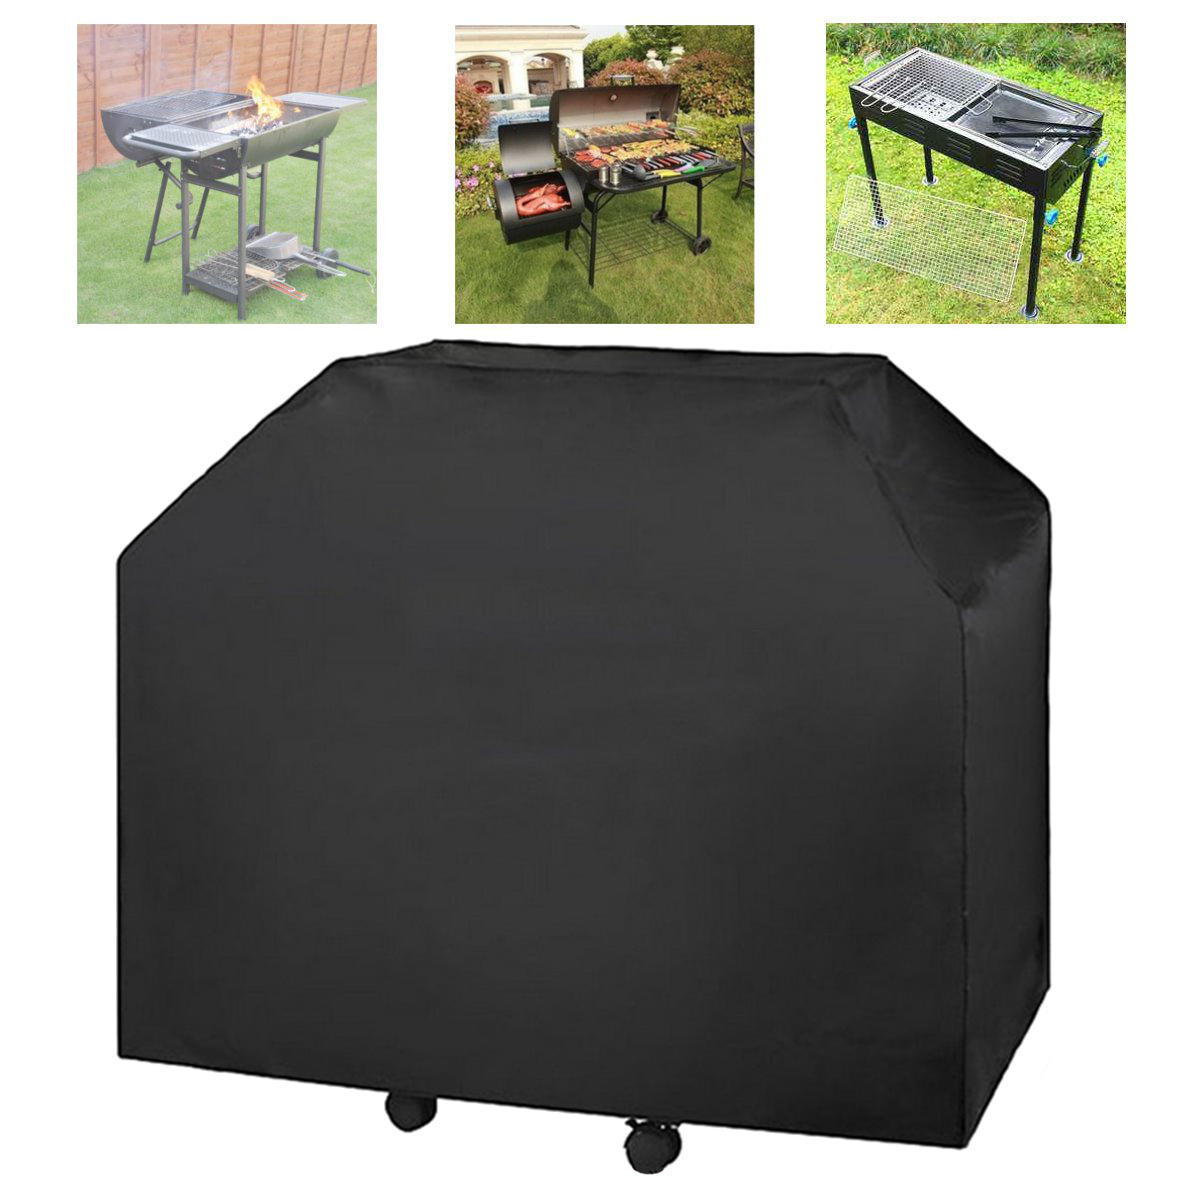 Zwarte, waterdichte hoes voor gasbarbecue met afmetingen van 183x66x130 cm, geschikt voor gebruik buiten.